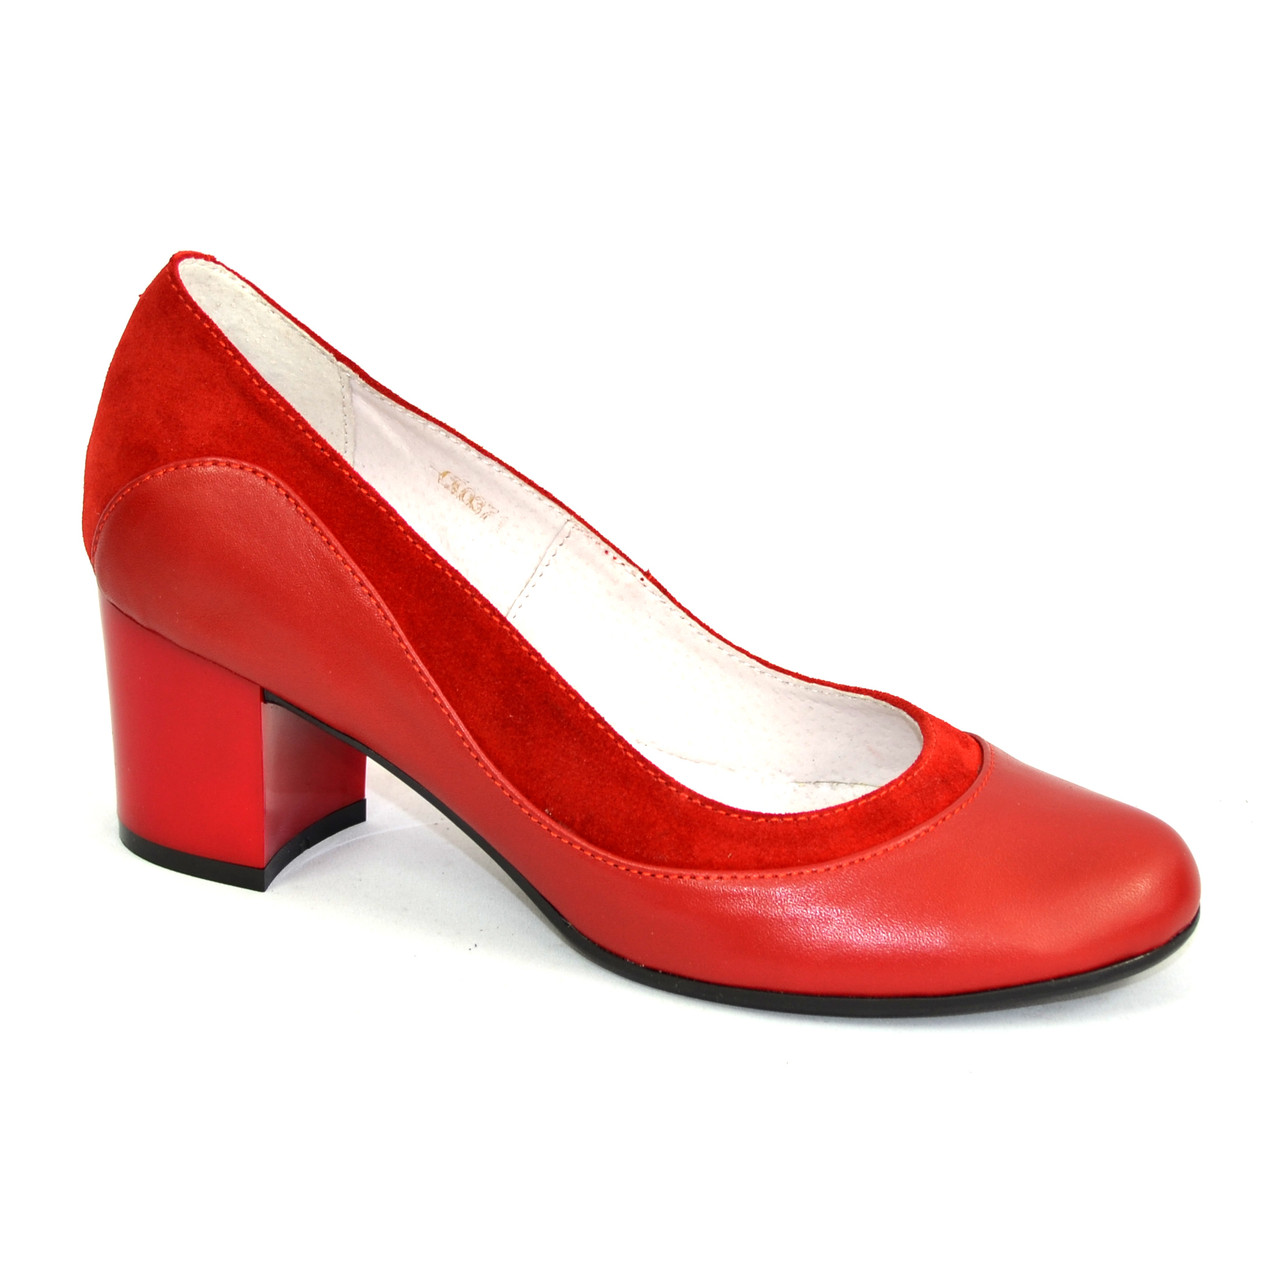 Туфли женские кожаные купить на вайлдберриз. Туфли женские красные. Красные туфли на невысоком каблуке. Женские туфли на низком каблуке из натуральной кожи красные. Туфли женские на низком каблуке.